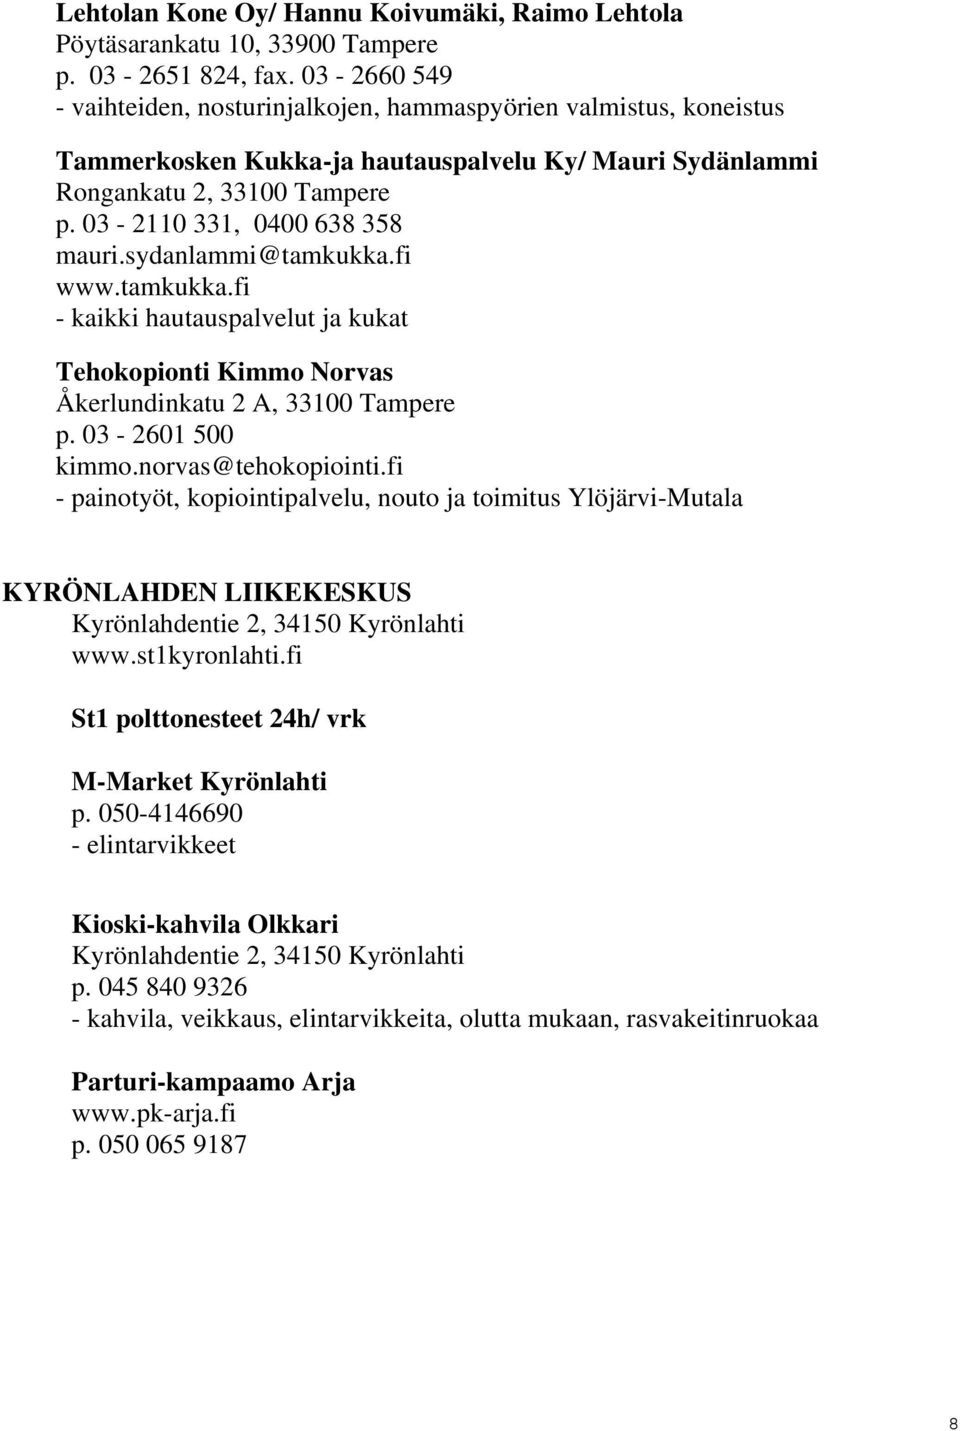 sydanlammi@tamkukka.fi www.tamkukka.fi - kaikki hautauspalvelut ja kukat Tehokopionti Kimmo Norvas Åkerlundinkatu 2 A, 33100 Tampere p. 03-2601 500 kimmo.norvas@tehokopiointi.